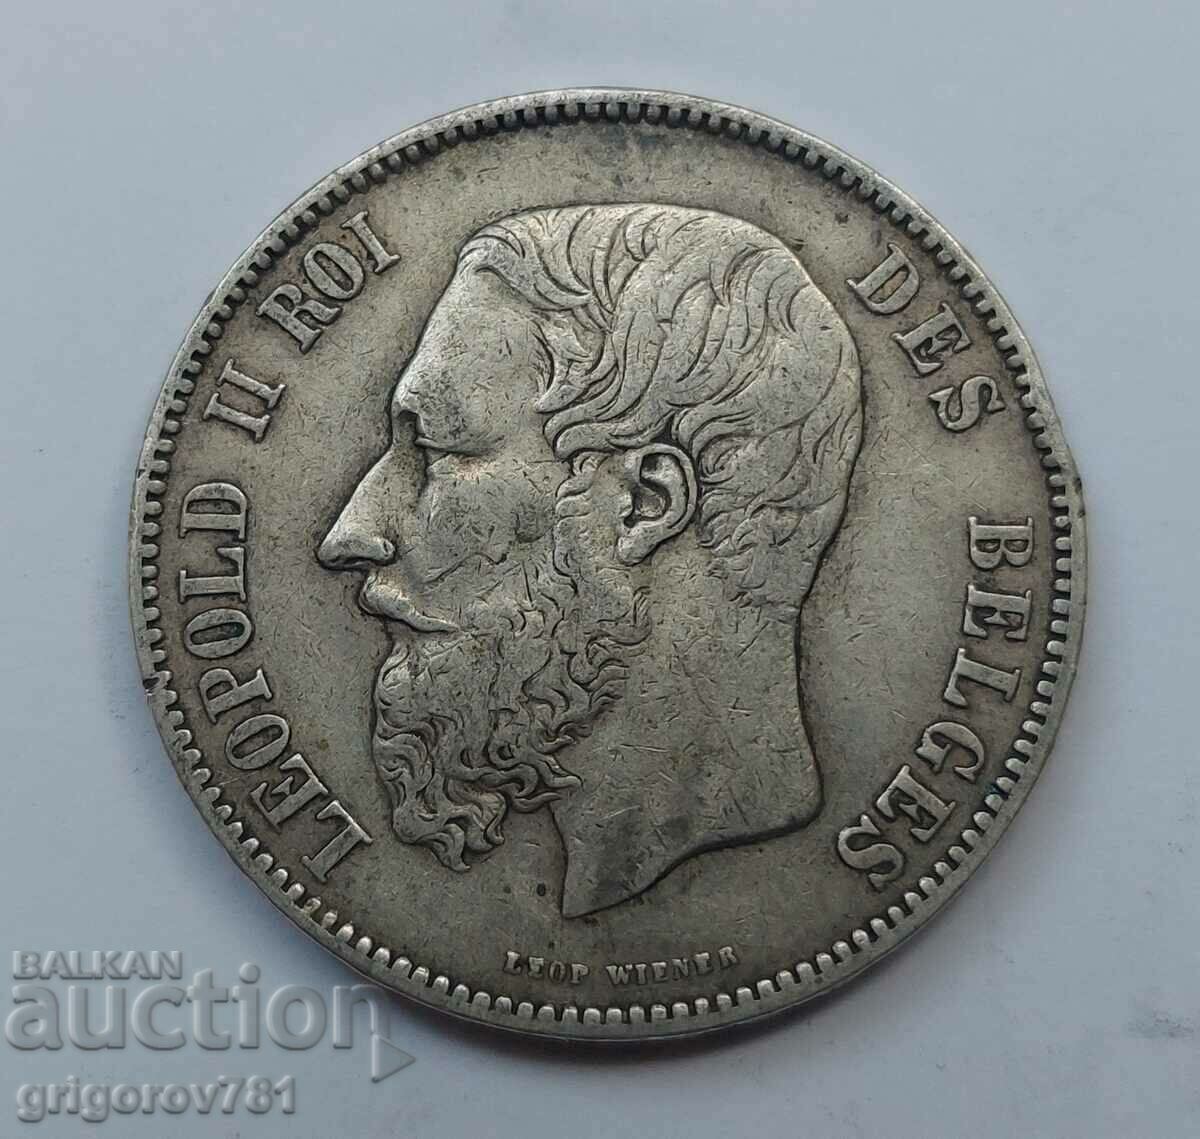 5 Francs Silver Belgium 1873 - Silver Coin #237